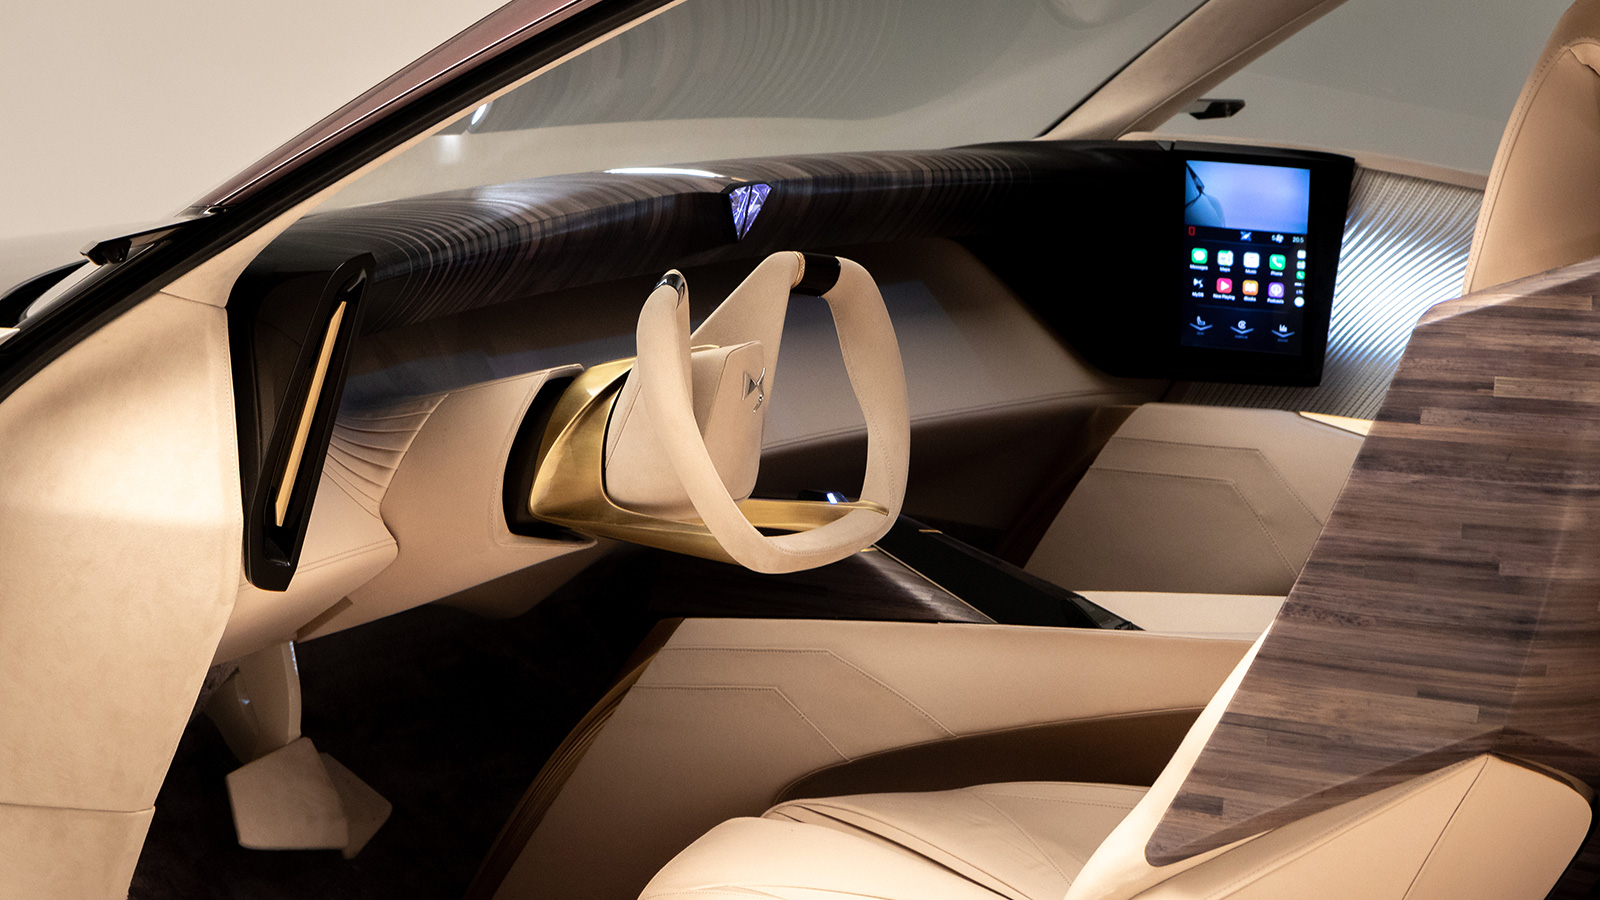 DS Automobiles gesture control inside future car